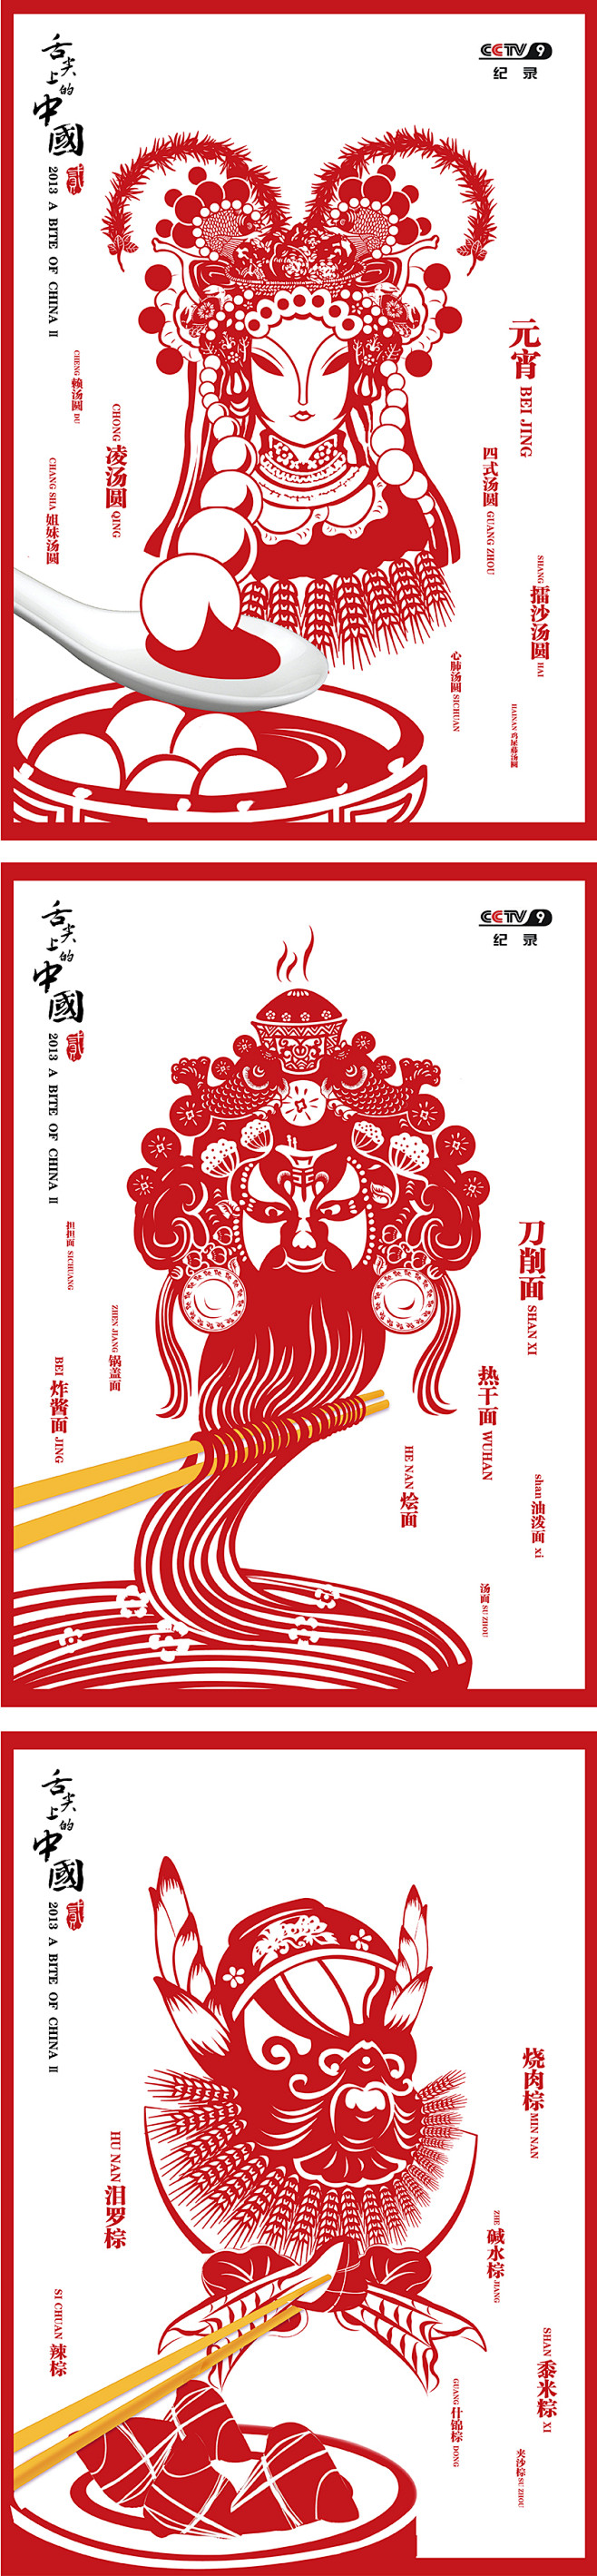 舌尖上的中国海报